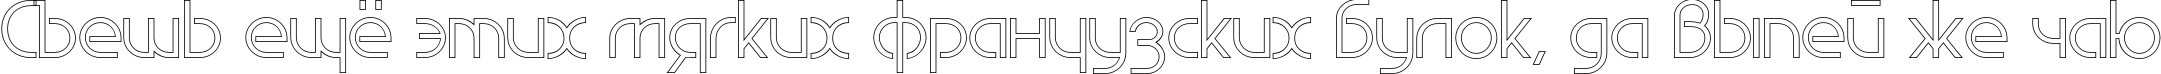 Пример написания шрифтом EdgeLineOutline текста на русском